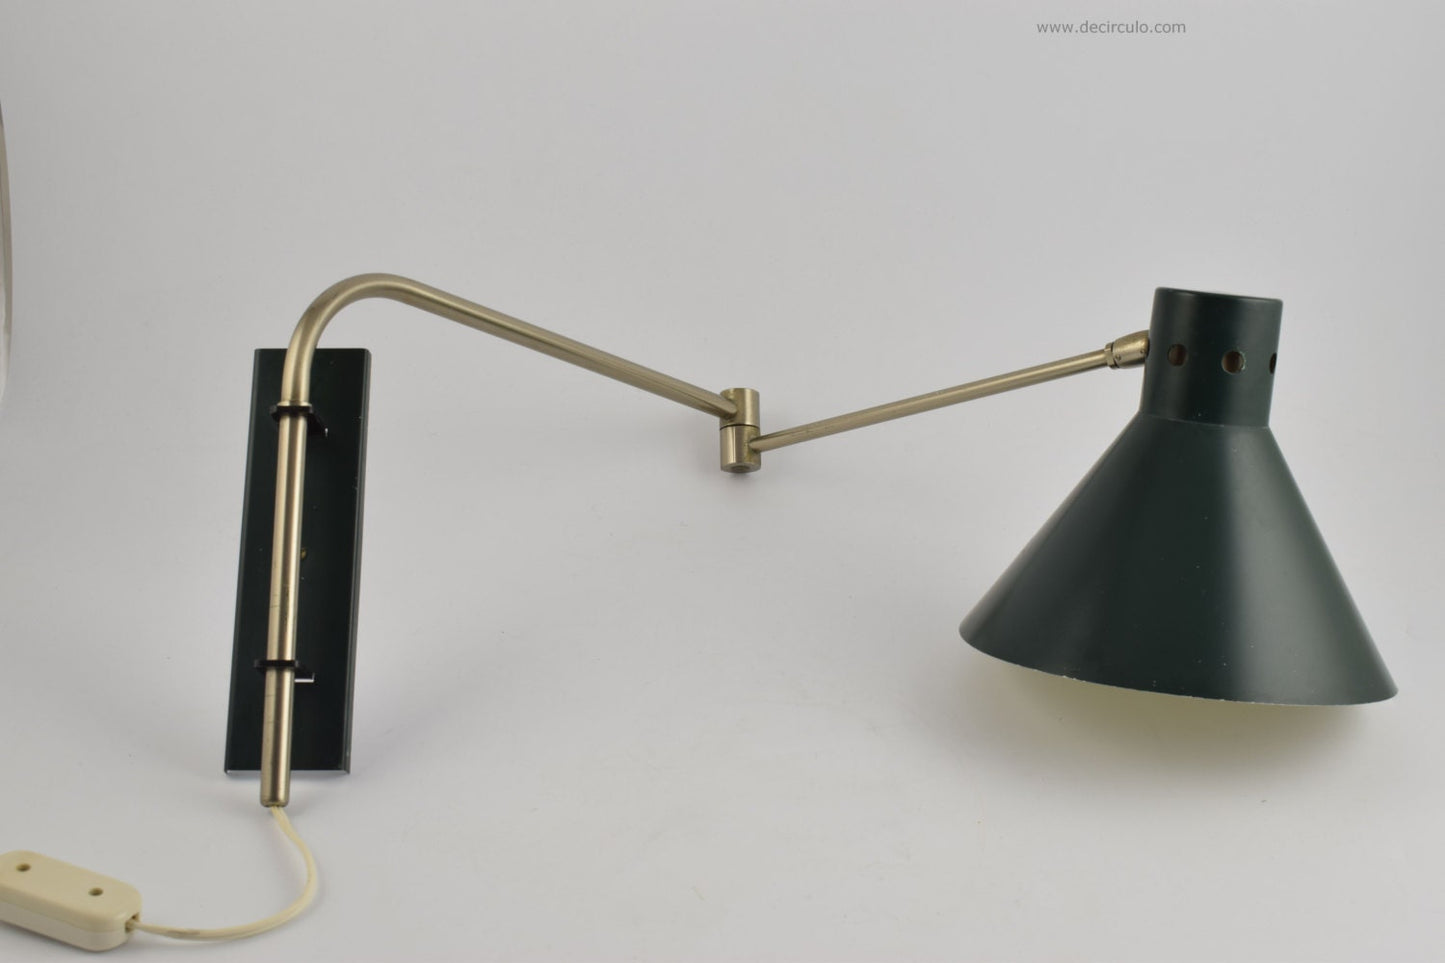 Lámpara de pared swing artimeta, lámpara de pared swing verde oscuro de la firma de diseño holandesa artimeta